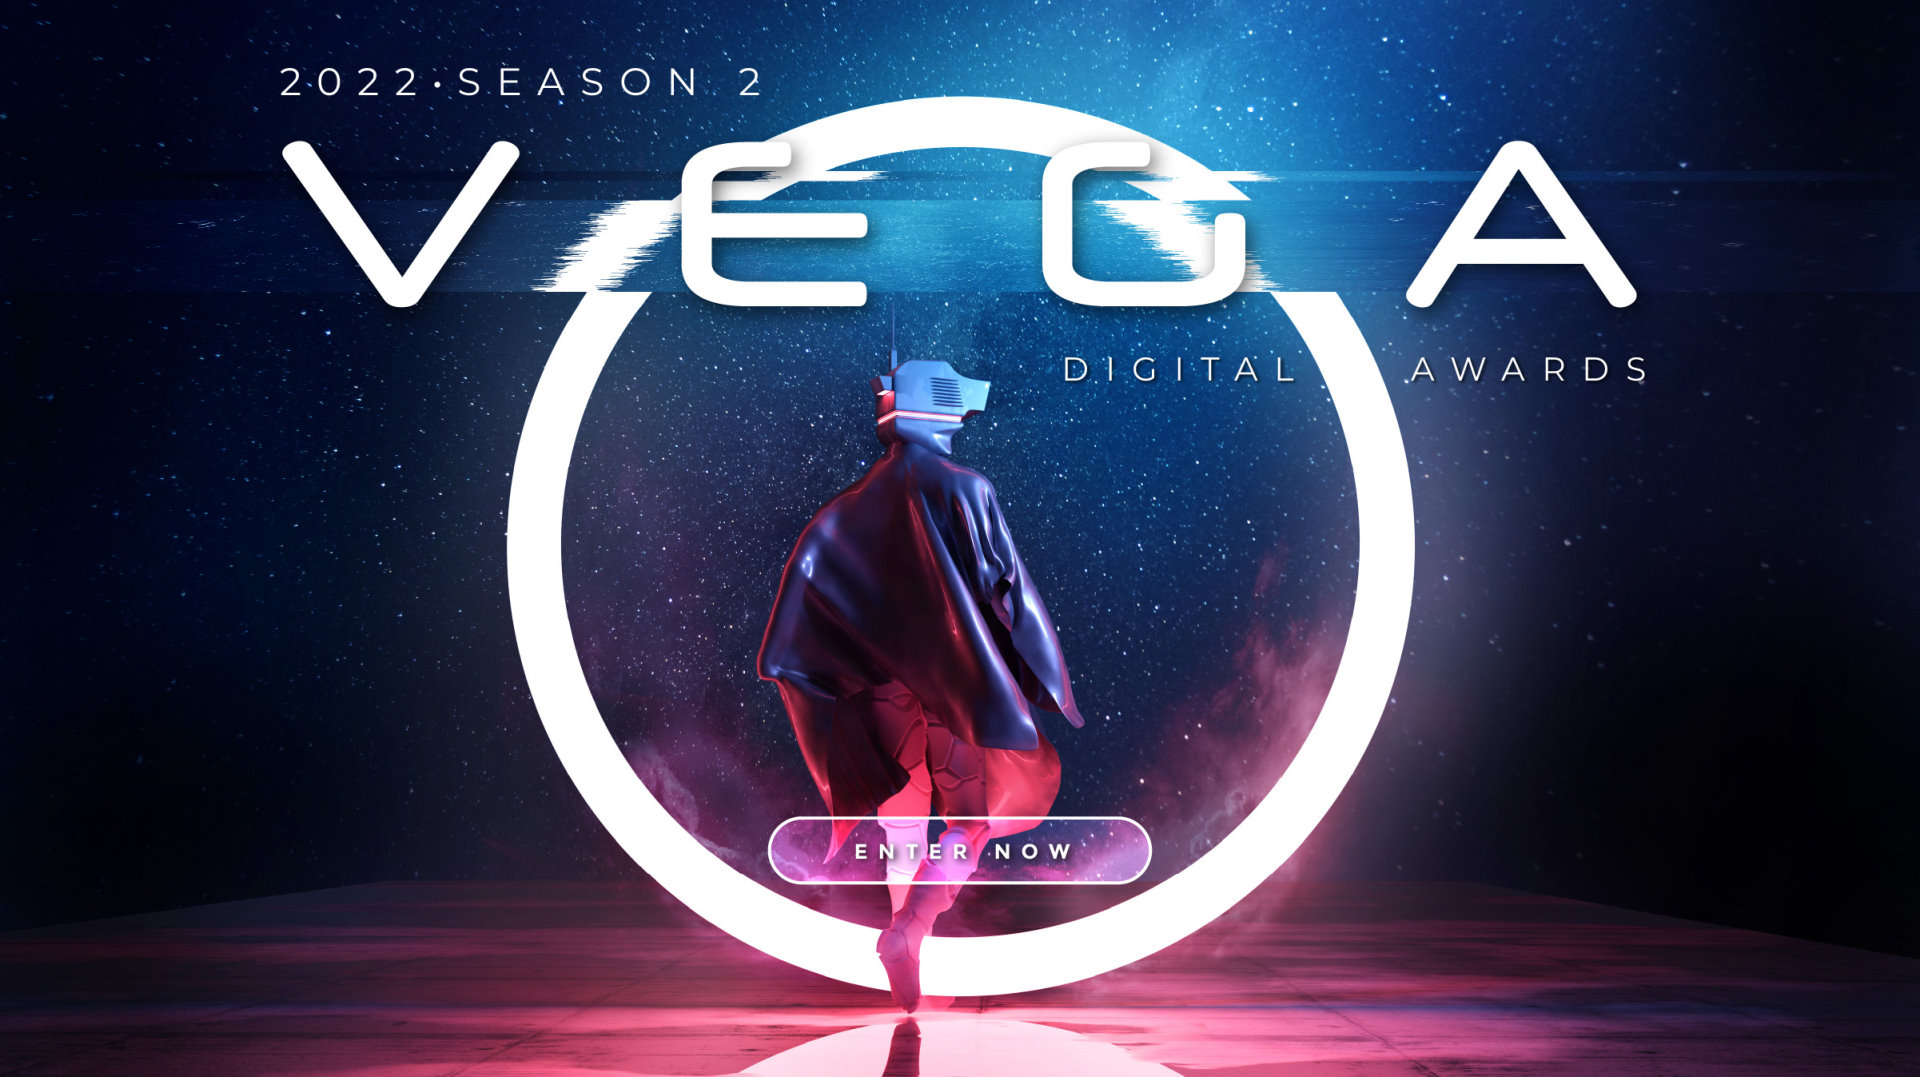 Vega Digital Awards - International Digital Advertising Awards, Website Awards